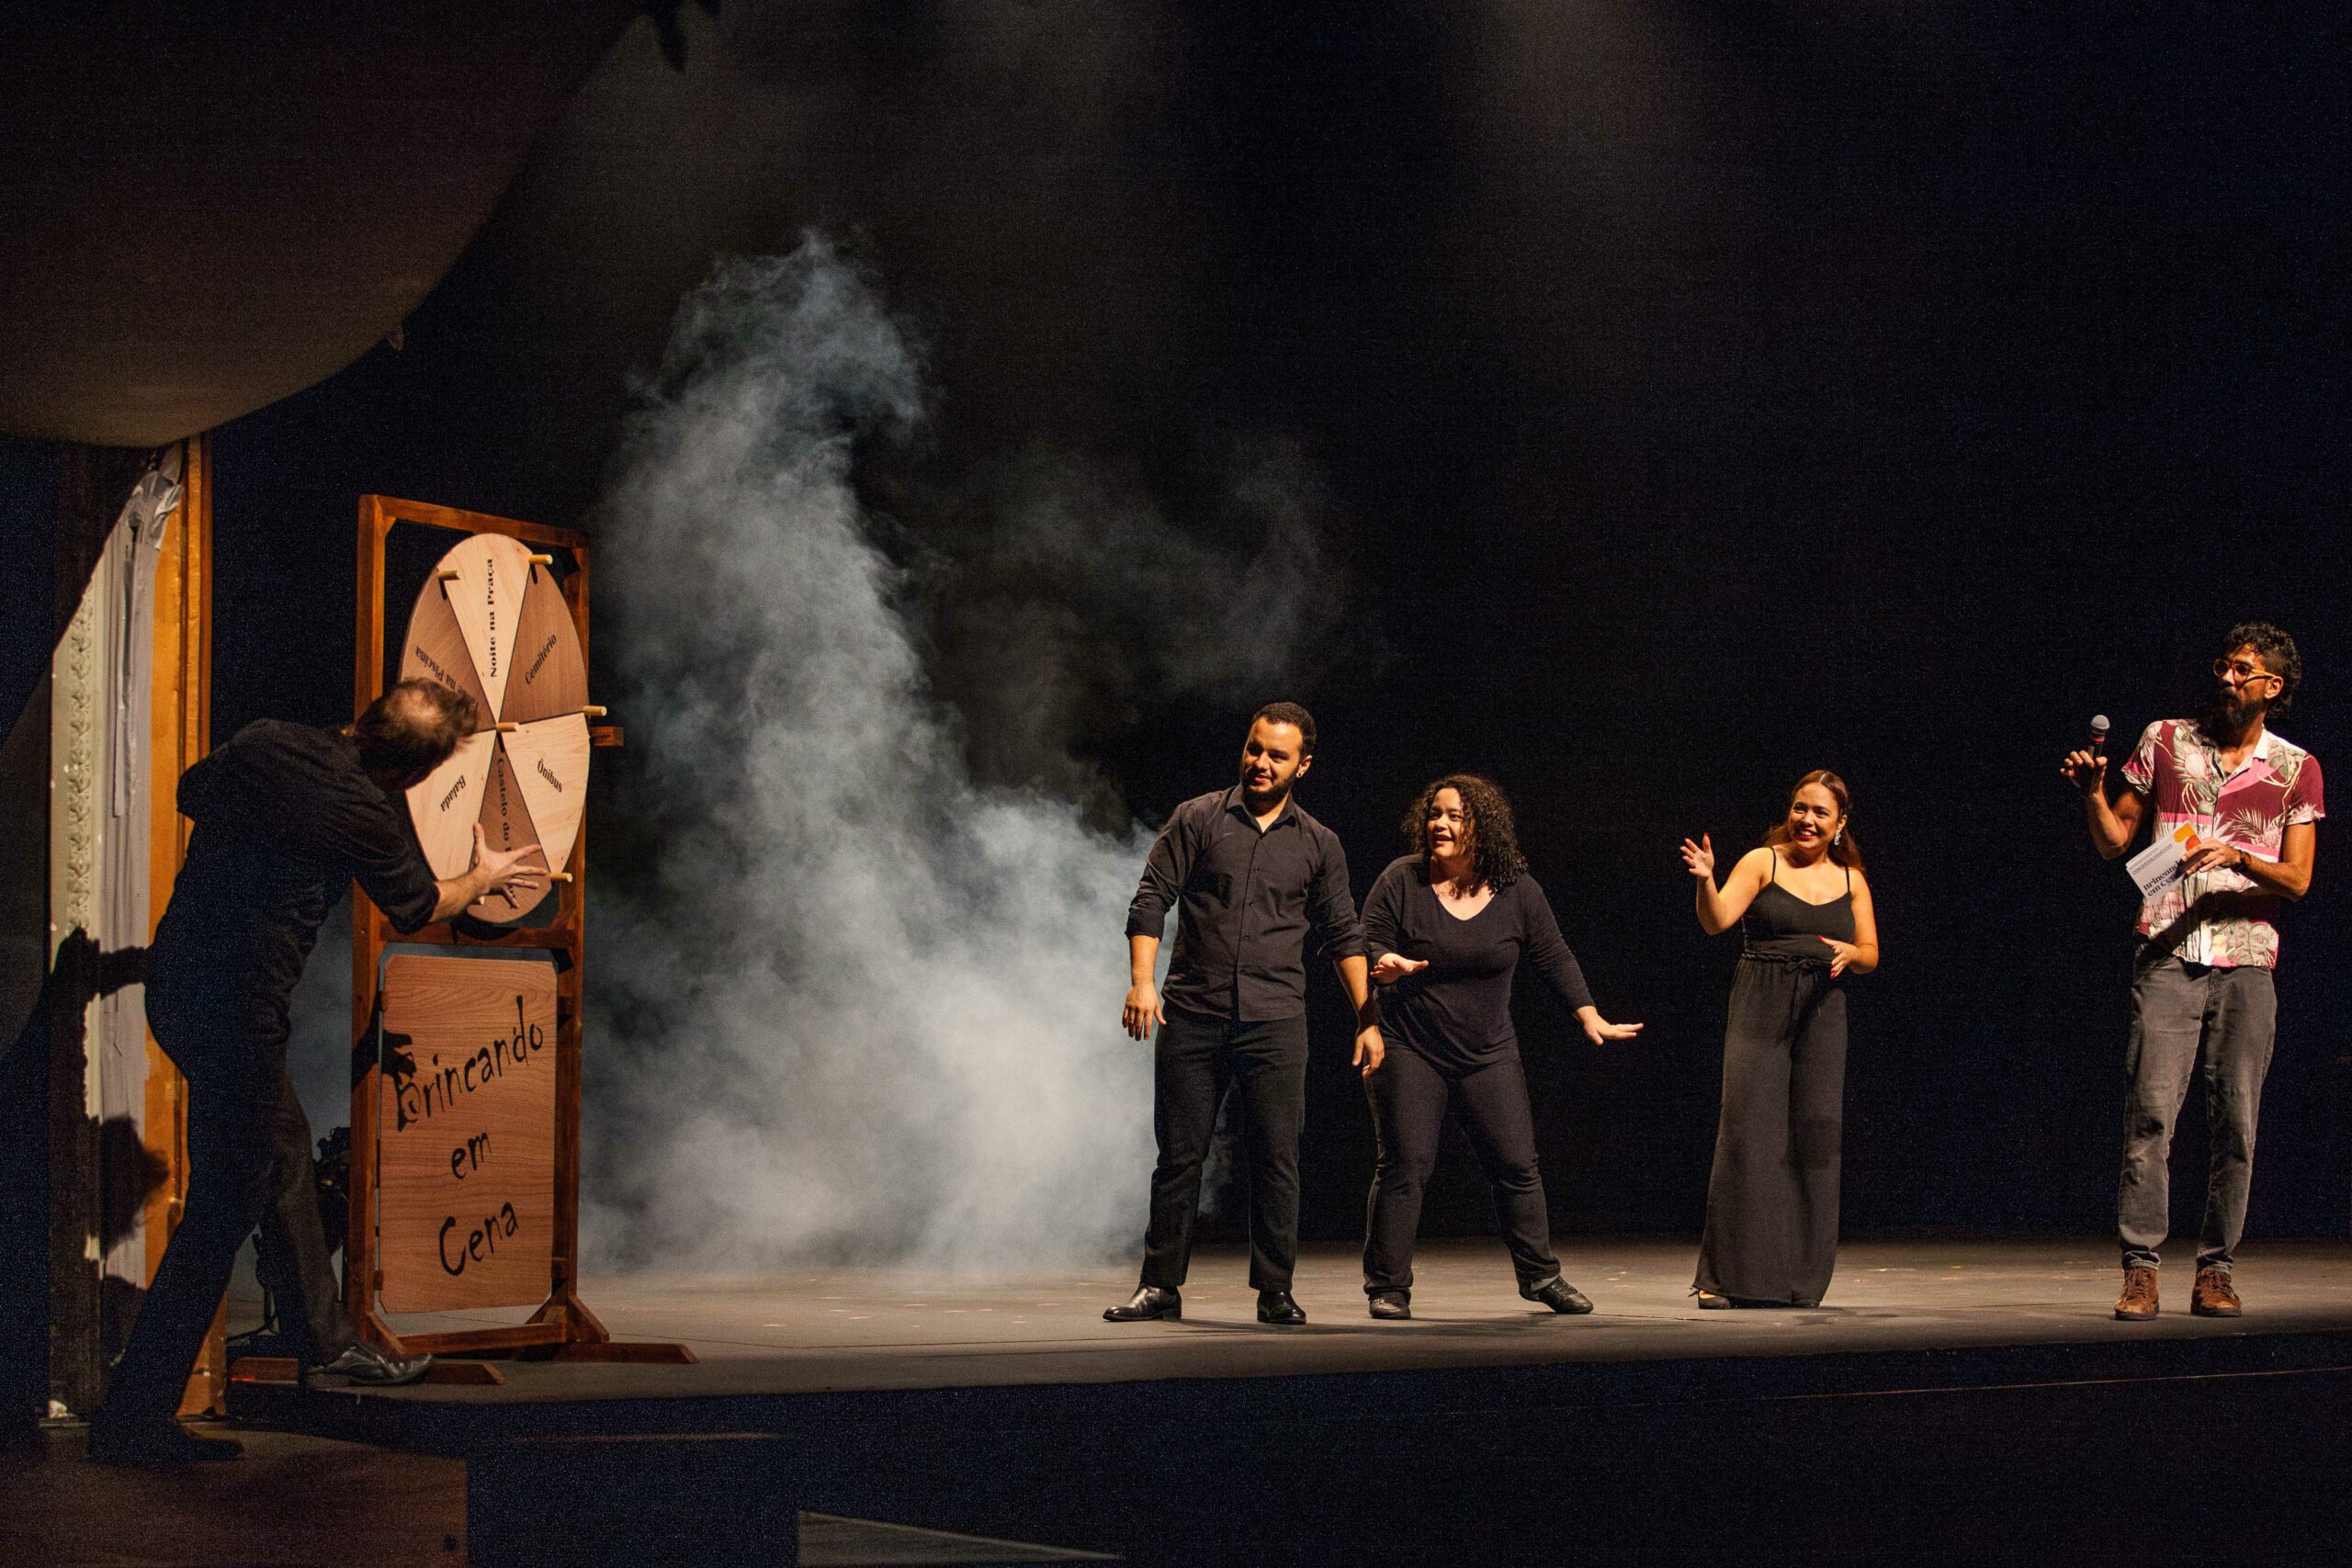 Brincando em Cena reinventa a ópera no palco do São Pedro